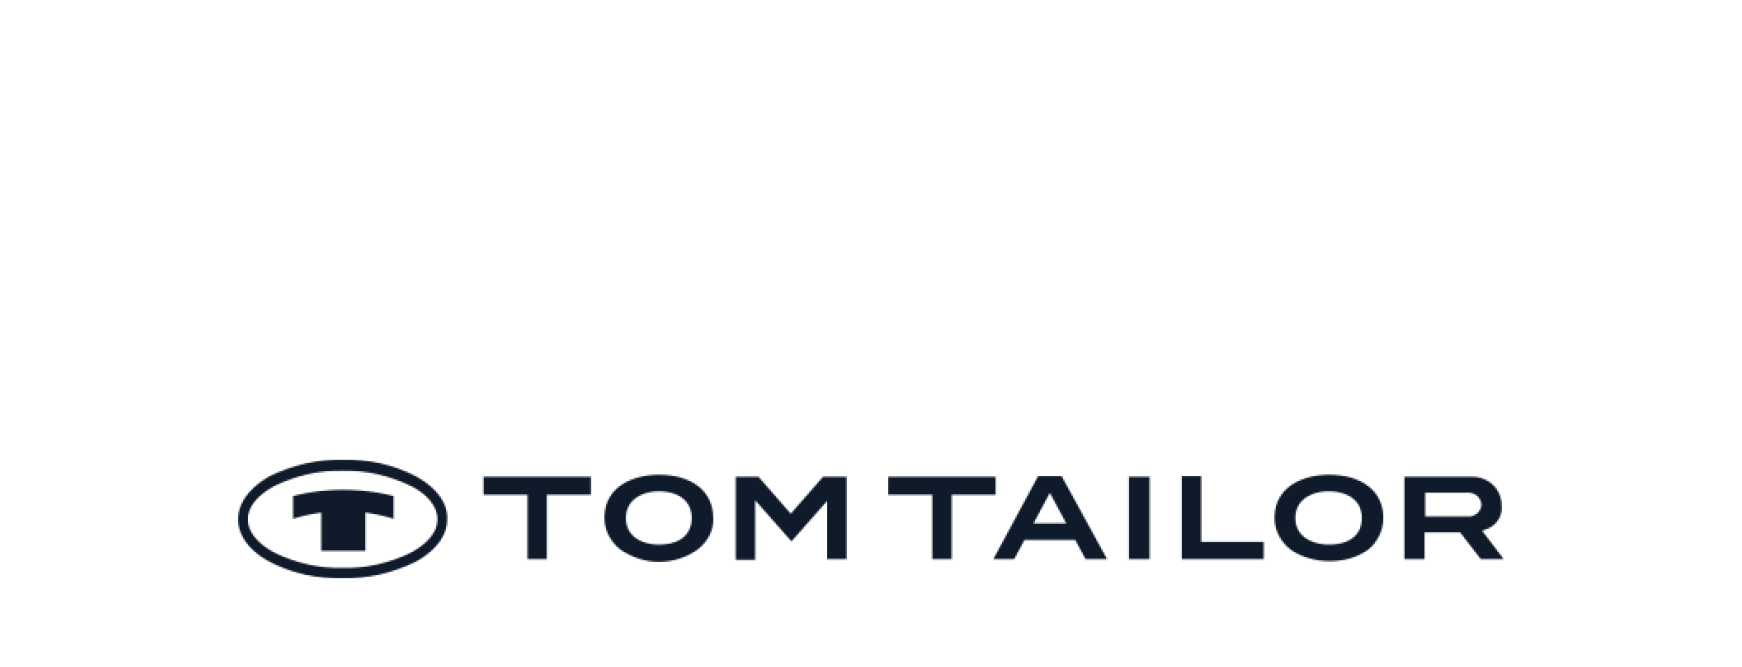 3 тома тейлора. Tom Tailor логотип. Том Тейлор знак. Логотип том Тейлор вектор. Tom Tailor история бренда.